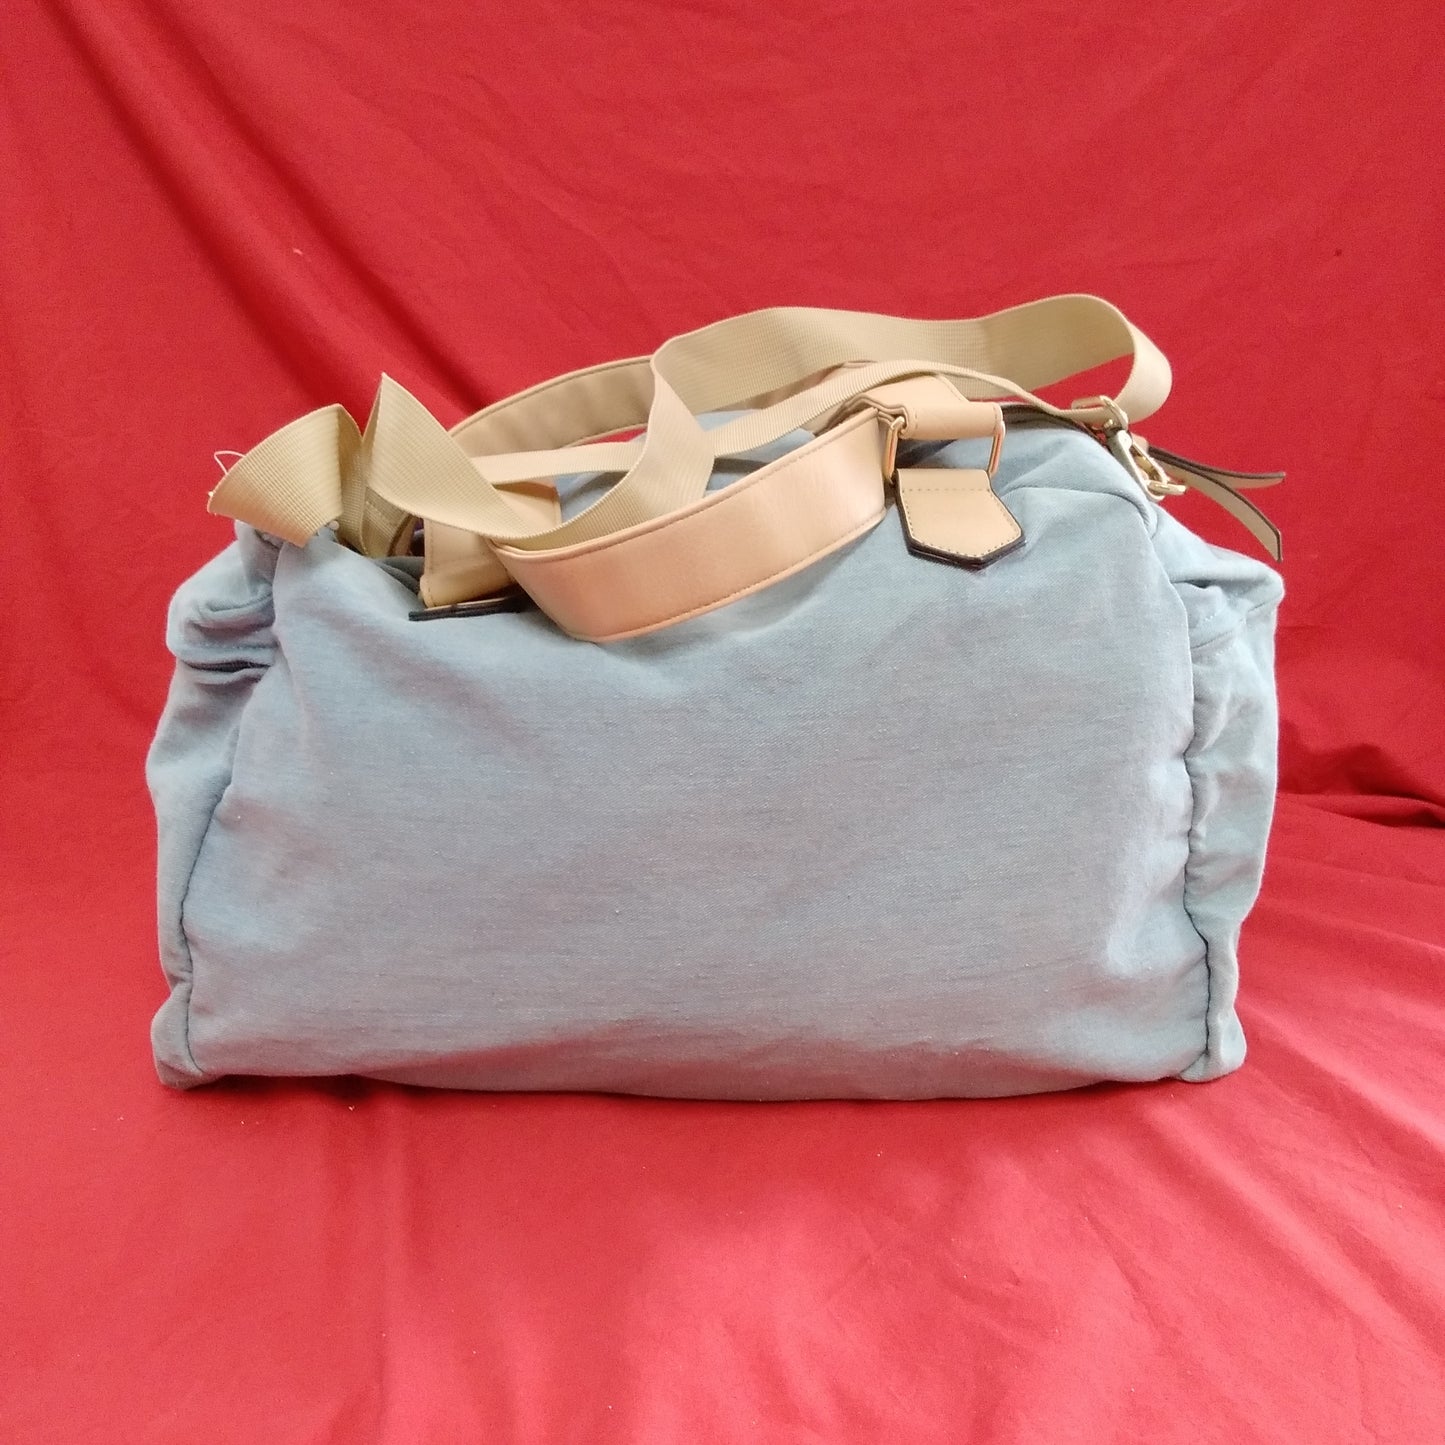 NWT - Violet Ray Denim Duffle/Travel Bag